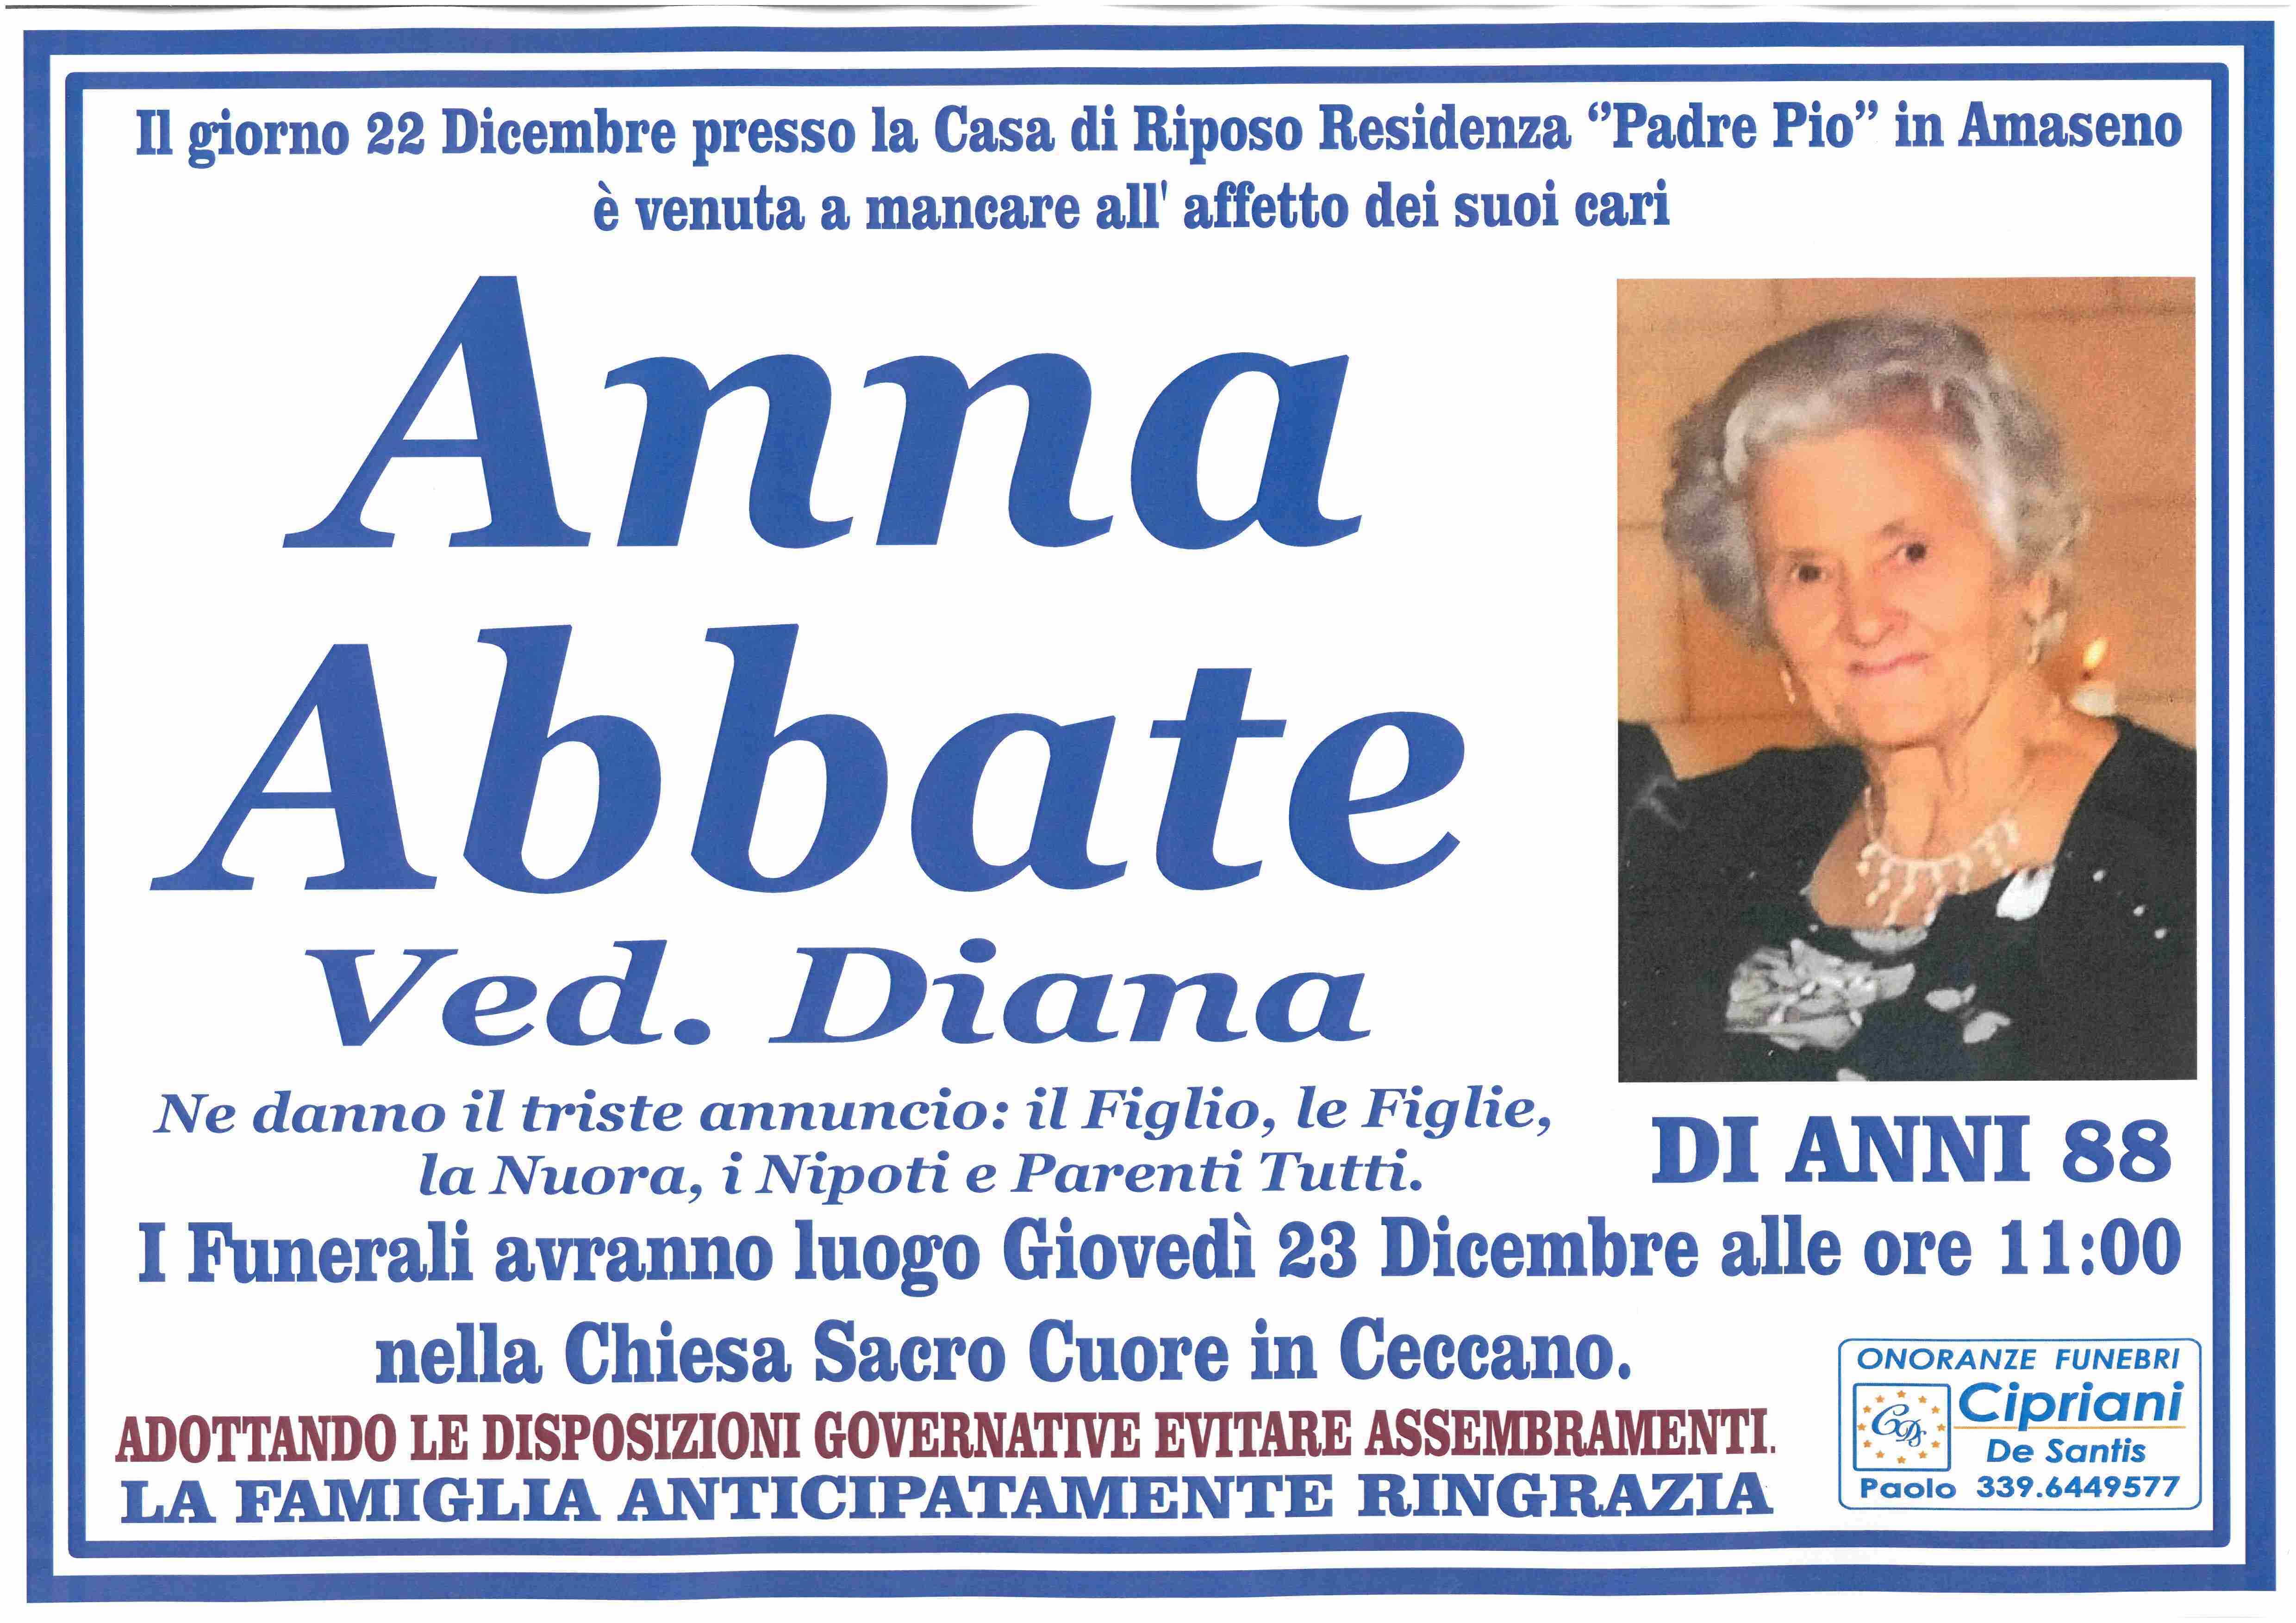 Anna Abbate